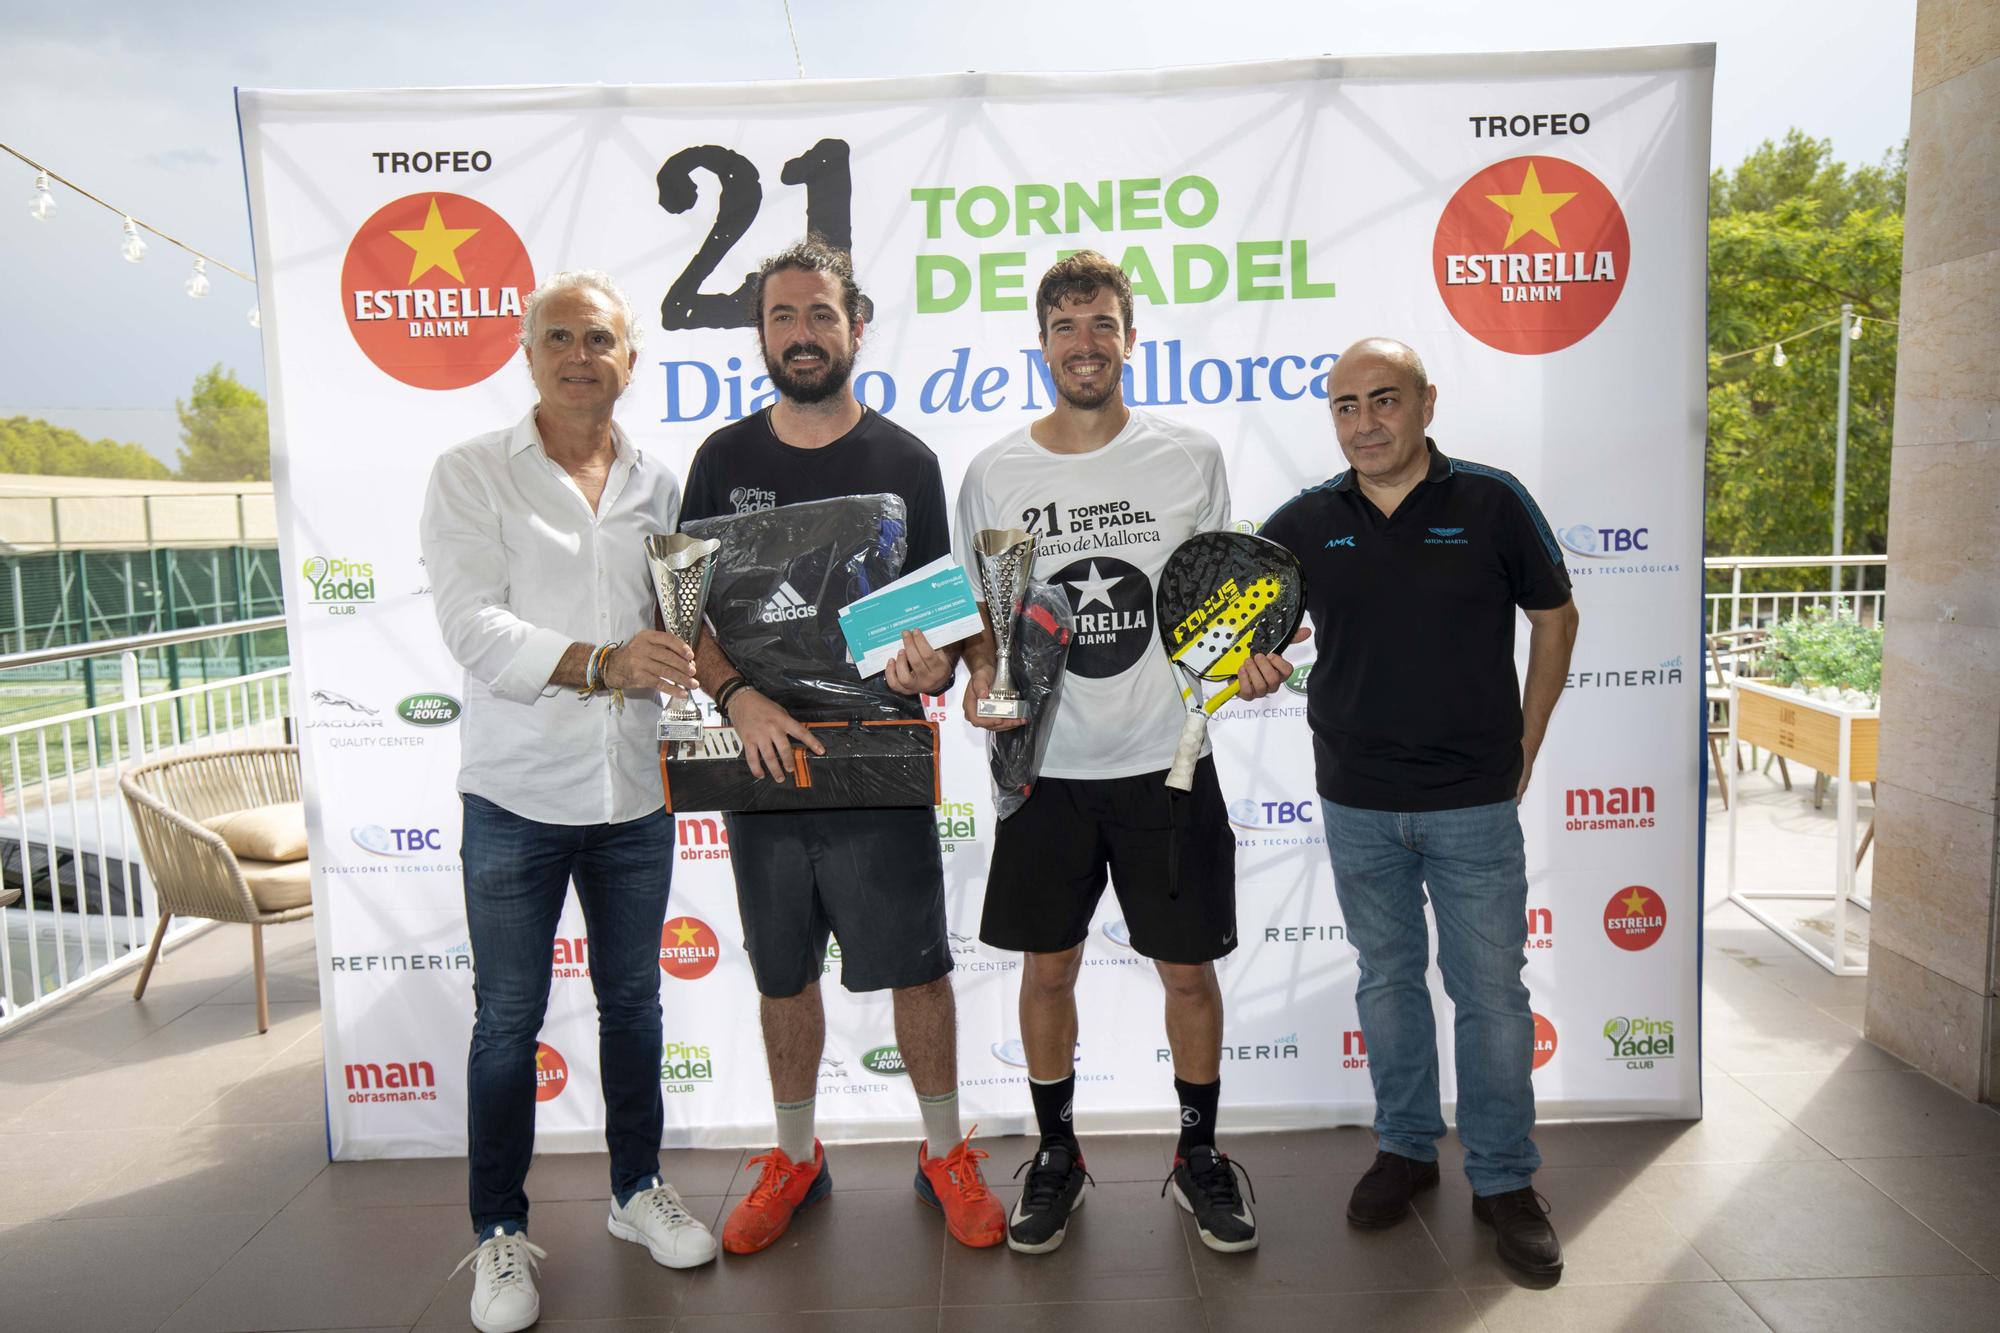 Entrega de premios: 21 Torneo de Pádel Diario de Mallorca, Trofeo Estrella Damm